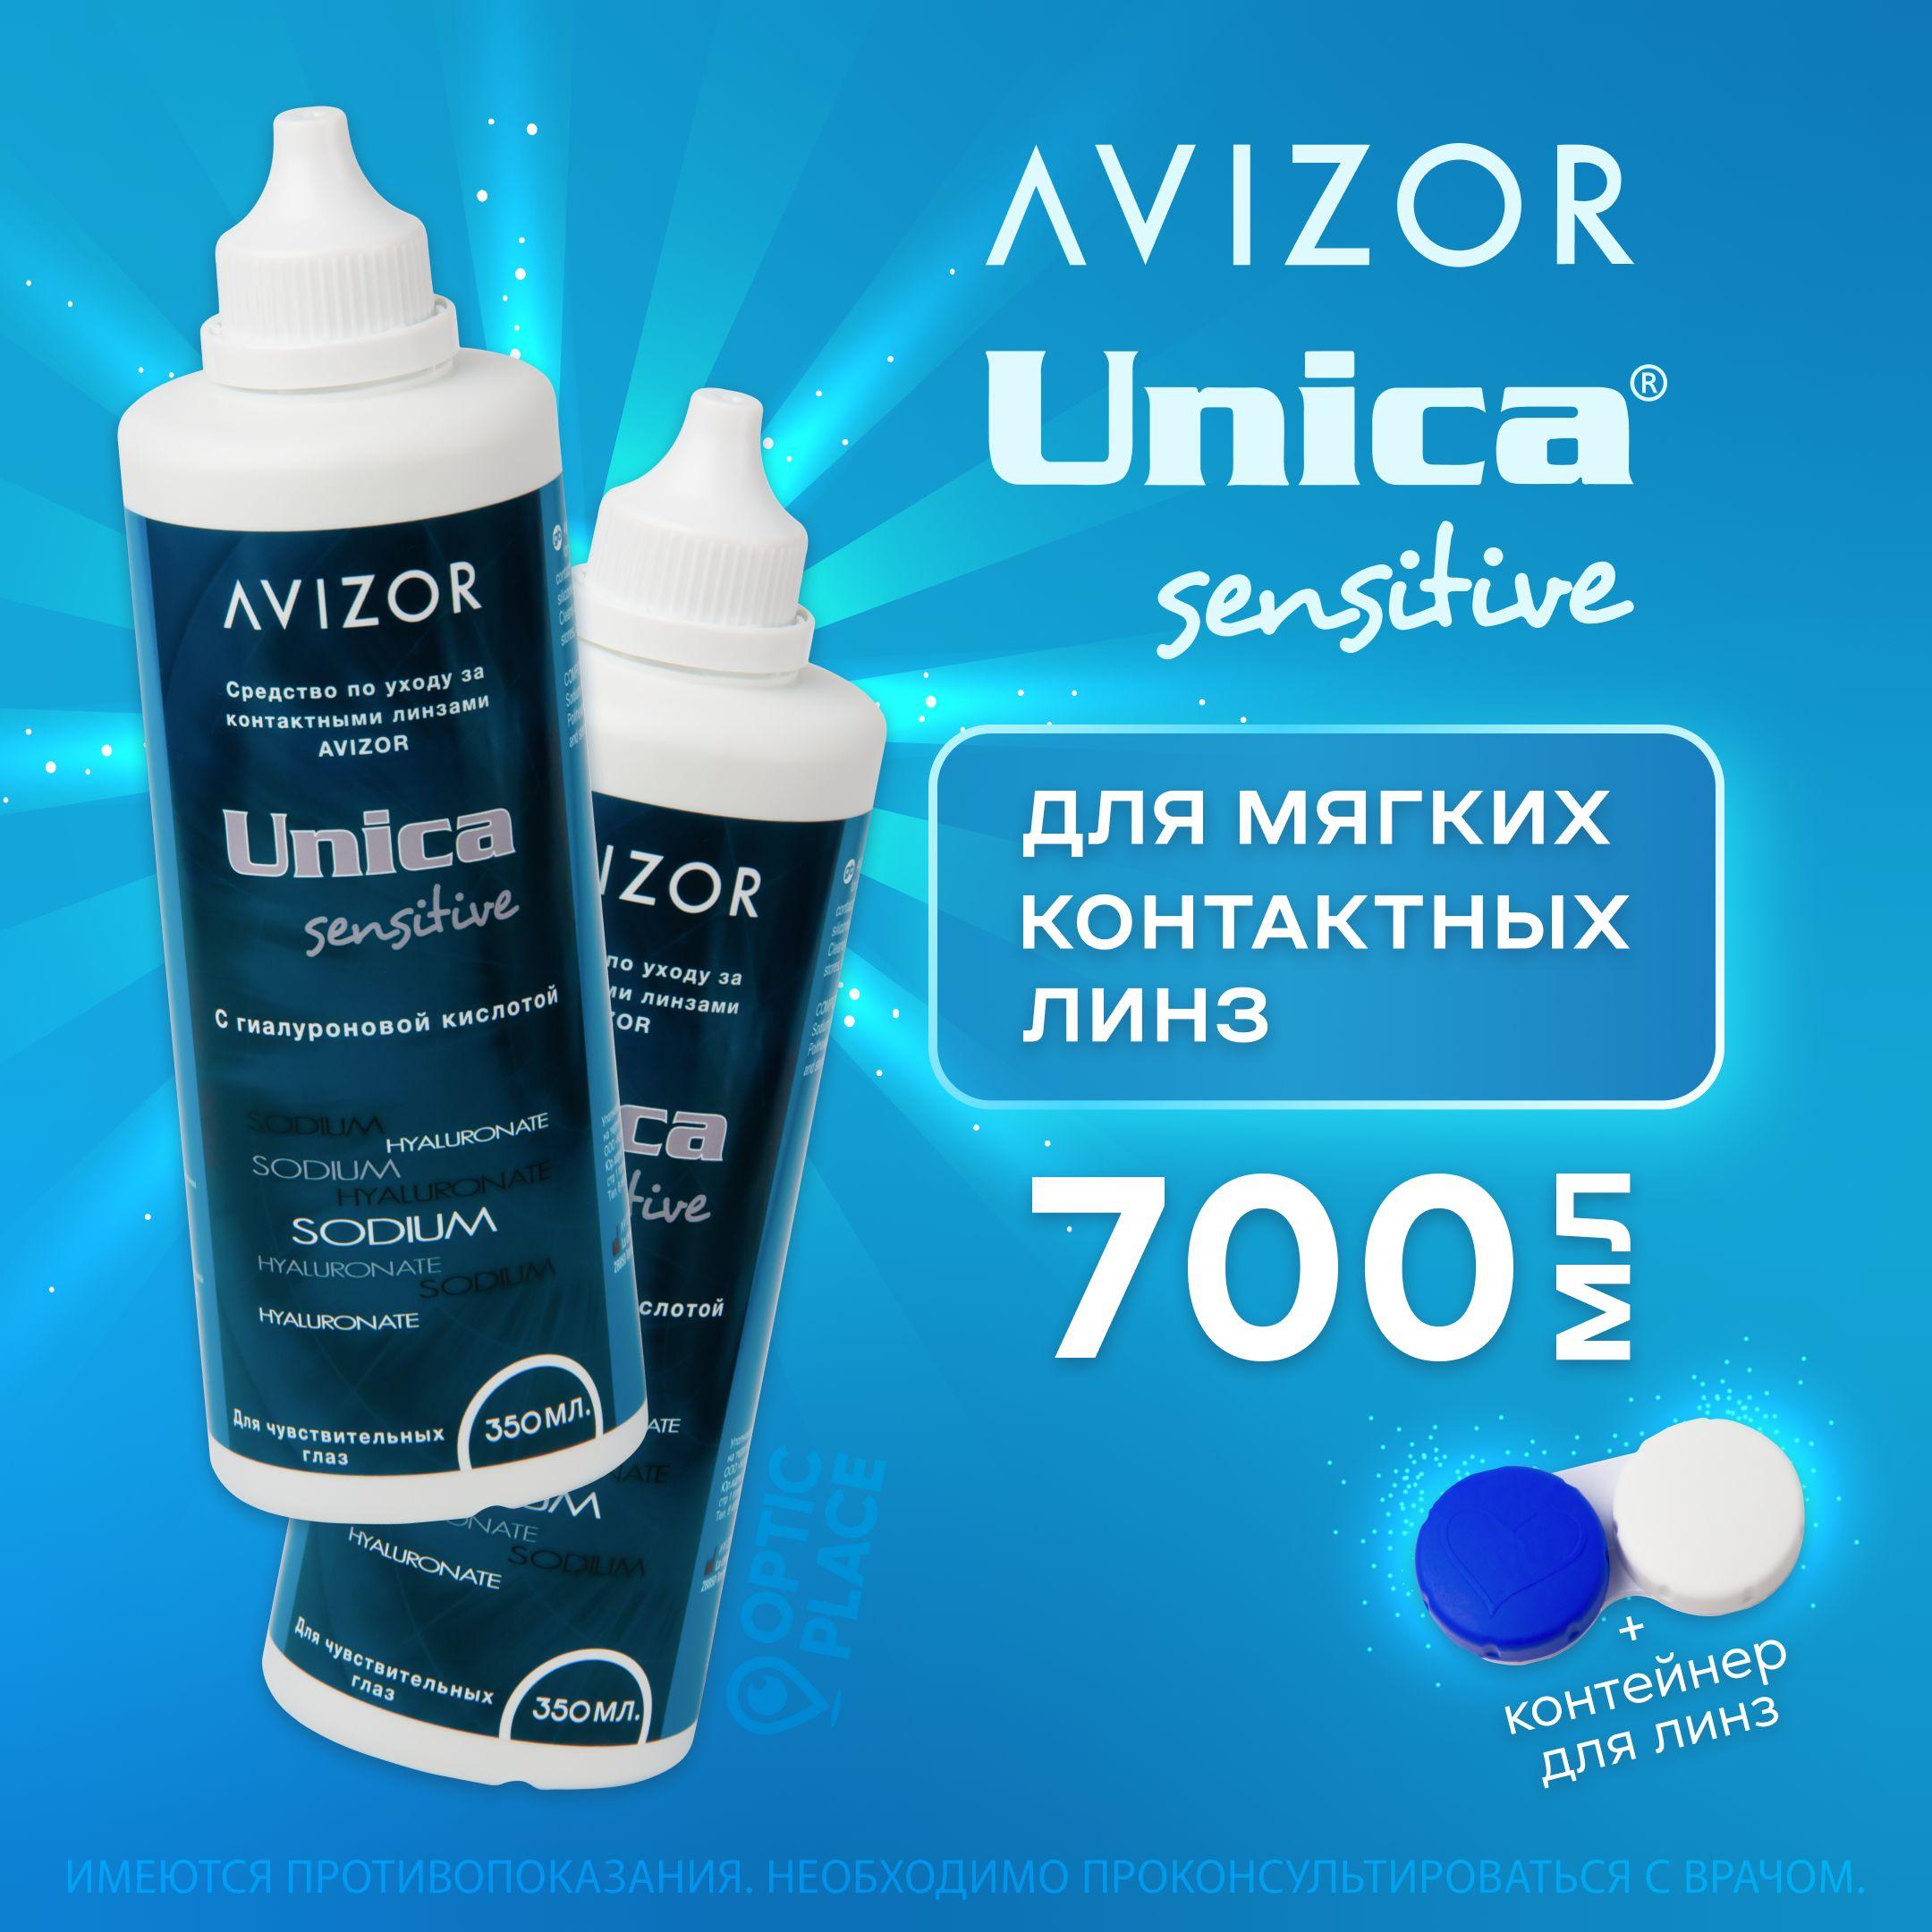 Многоцелевой раствор для контактных линз Avizor Unica Sensitive (Авизор Уника Сенситив), 350 мл - 2 шт. с контейнером для линз